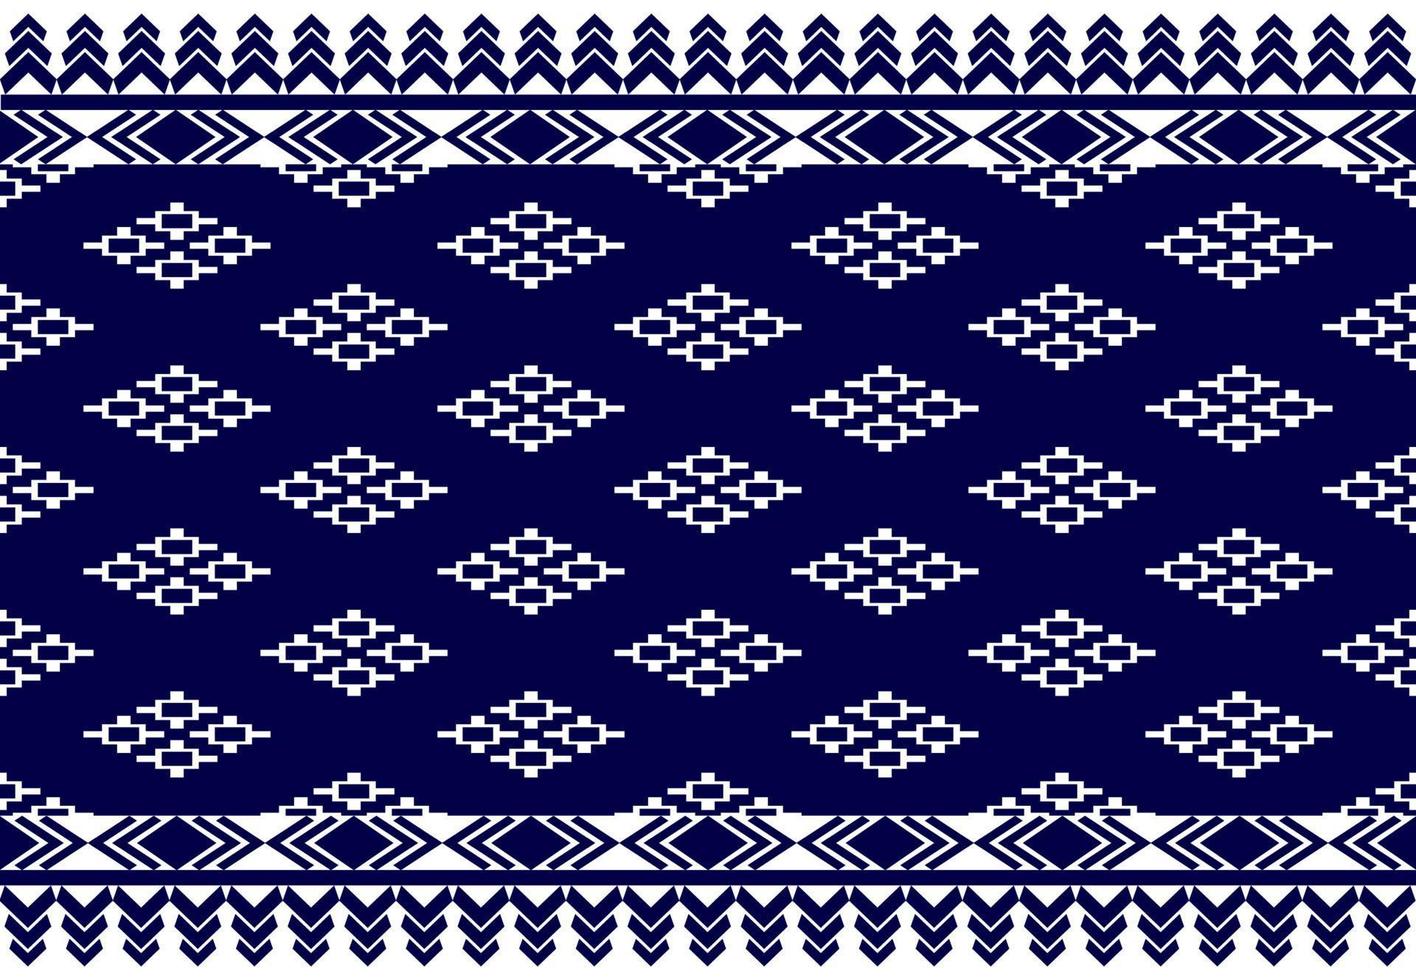 motif ethnique sans couture géométrique natif traditionnel. vecteur tribal. conception pour le fond, le papier peint, la texture, le tissu, les vêtements, le batik, le tapis, la broderie